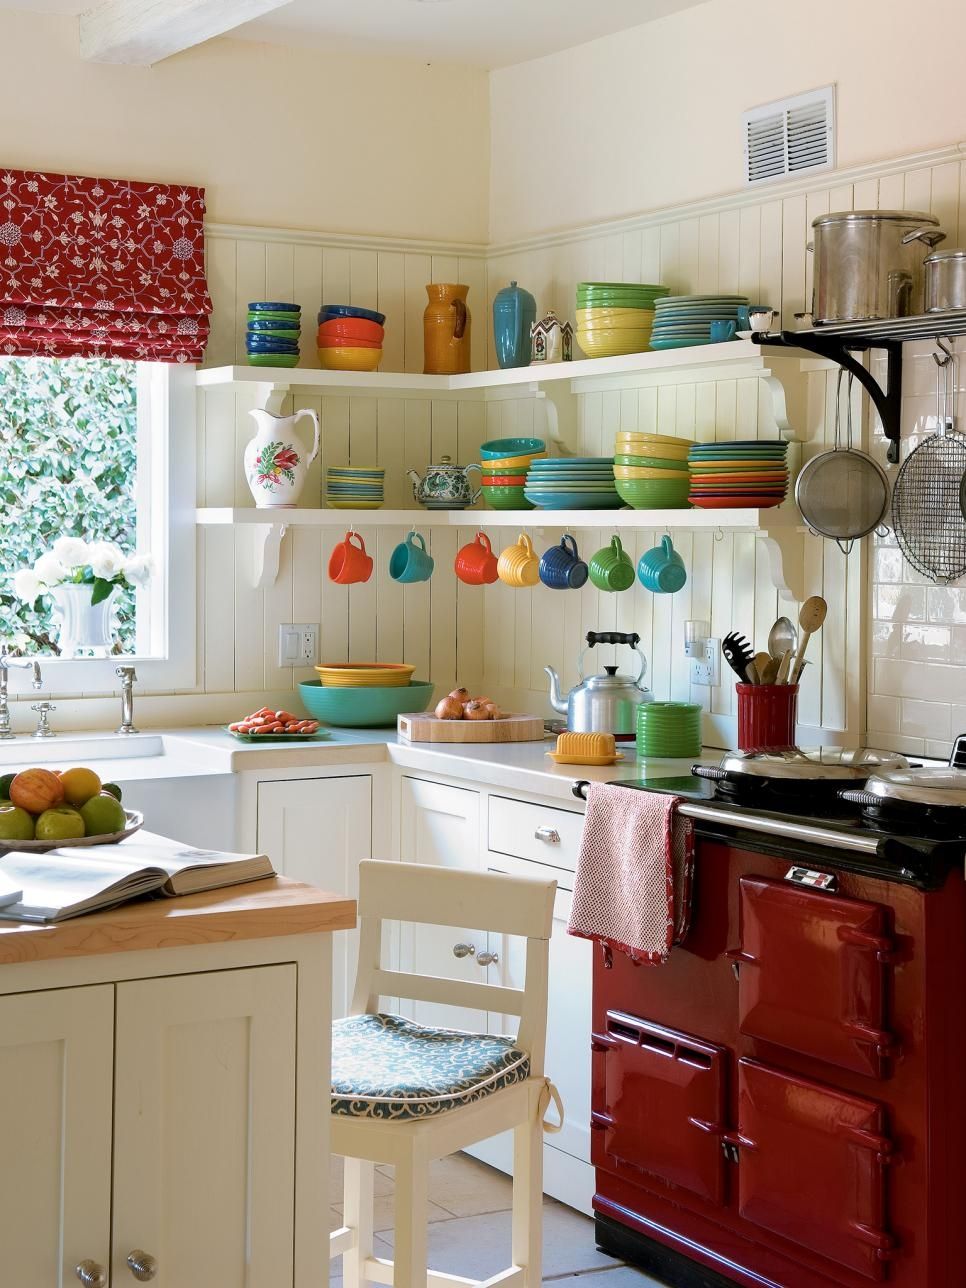 Intérieur de cuisine blanc avec une combinaison harmonieuse de couleurs